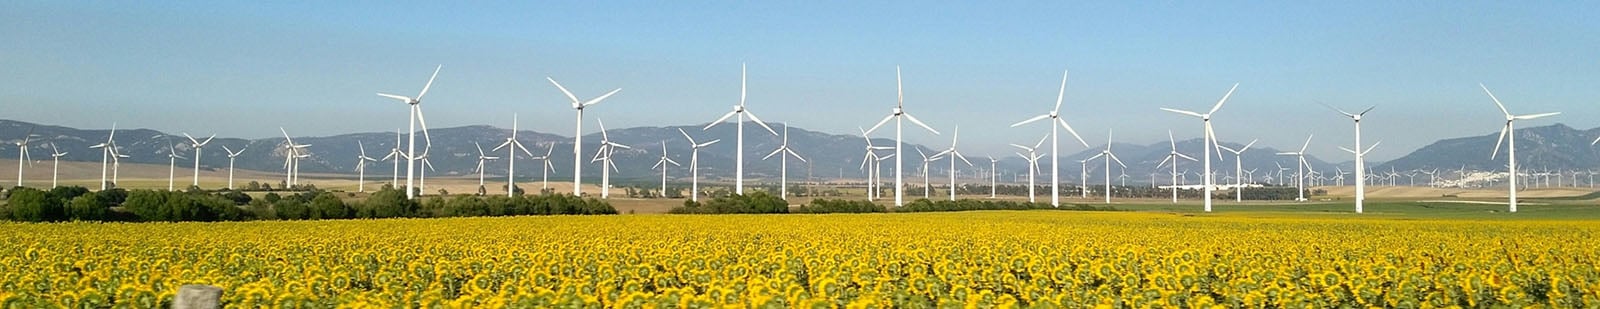 Renewable energy windmills